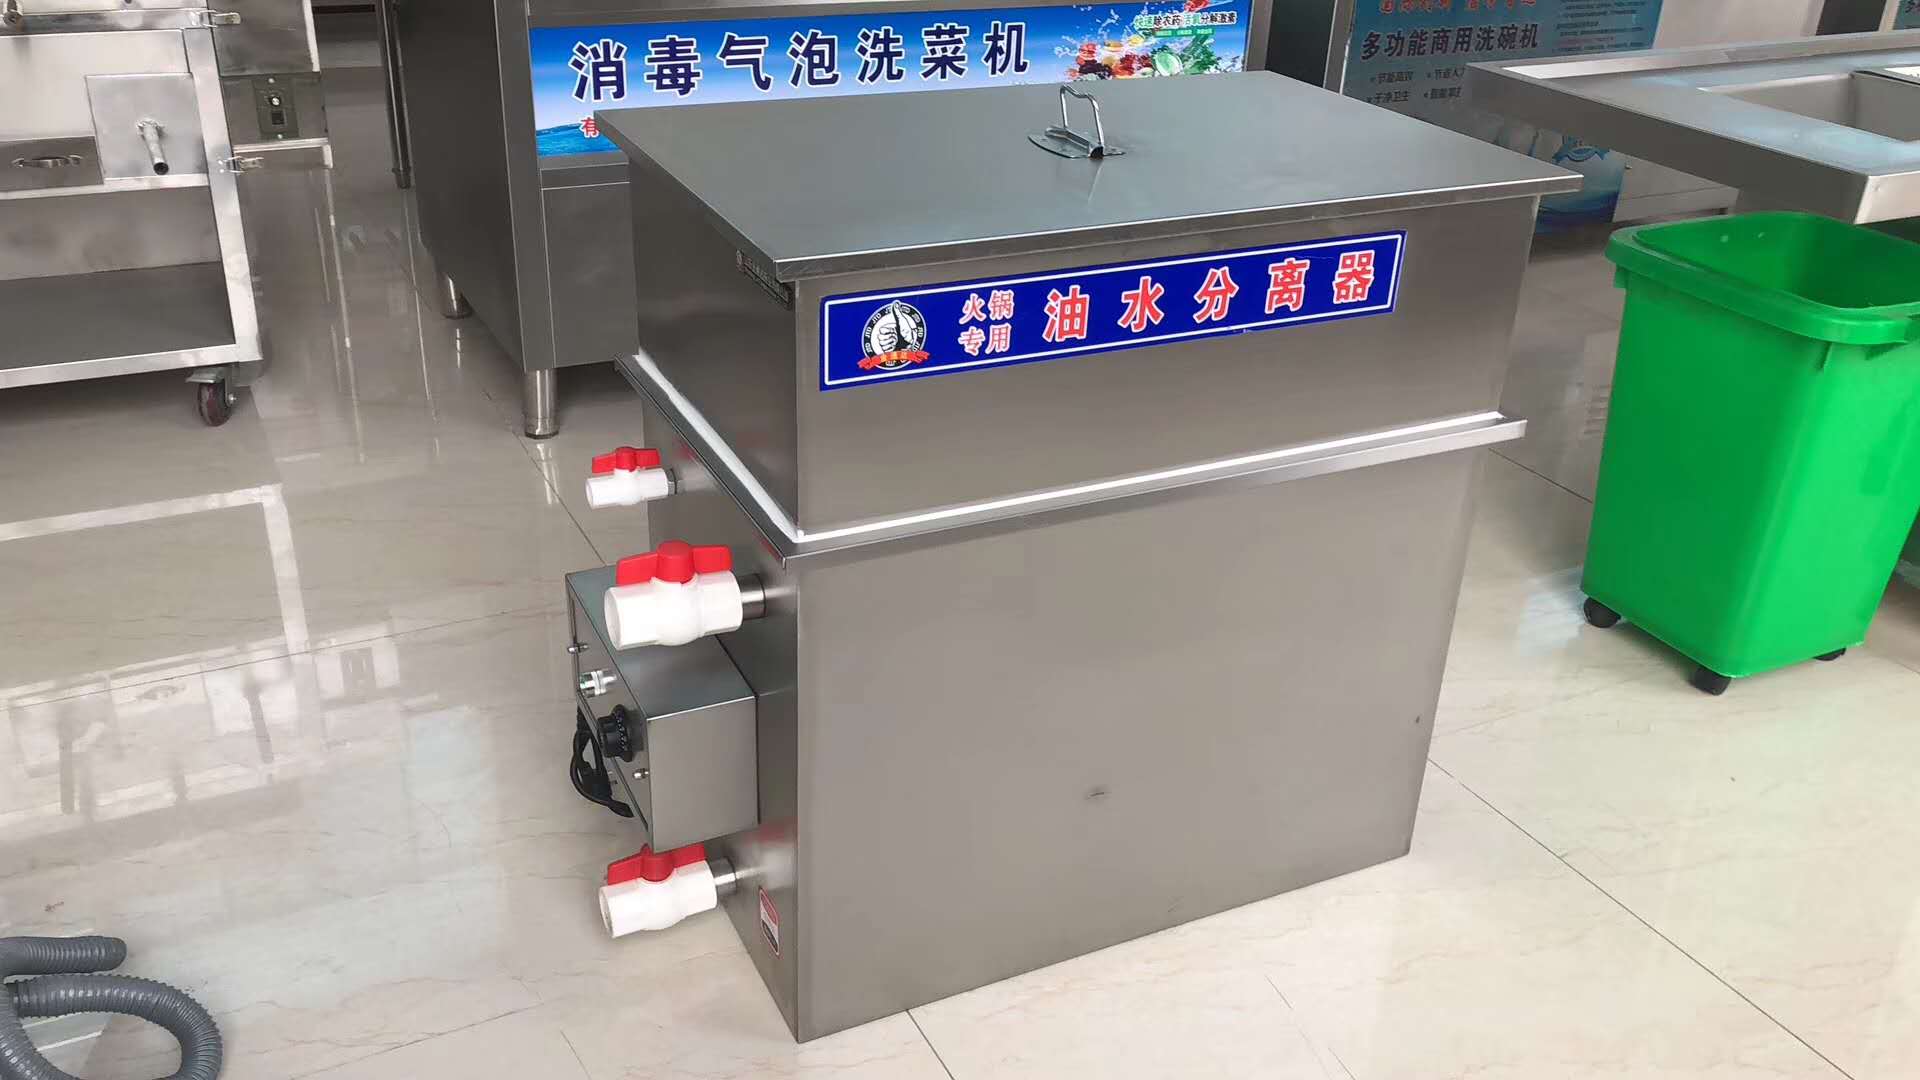 上海市上海饭店用油水分离器-5厂家上海饭店用油水分离器-5、油水分离器报价、安装油水分离器